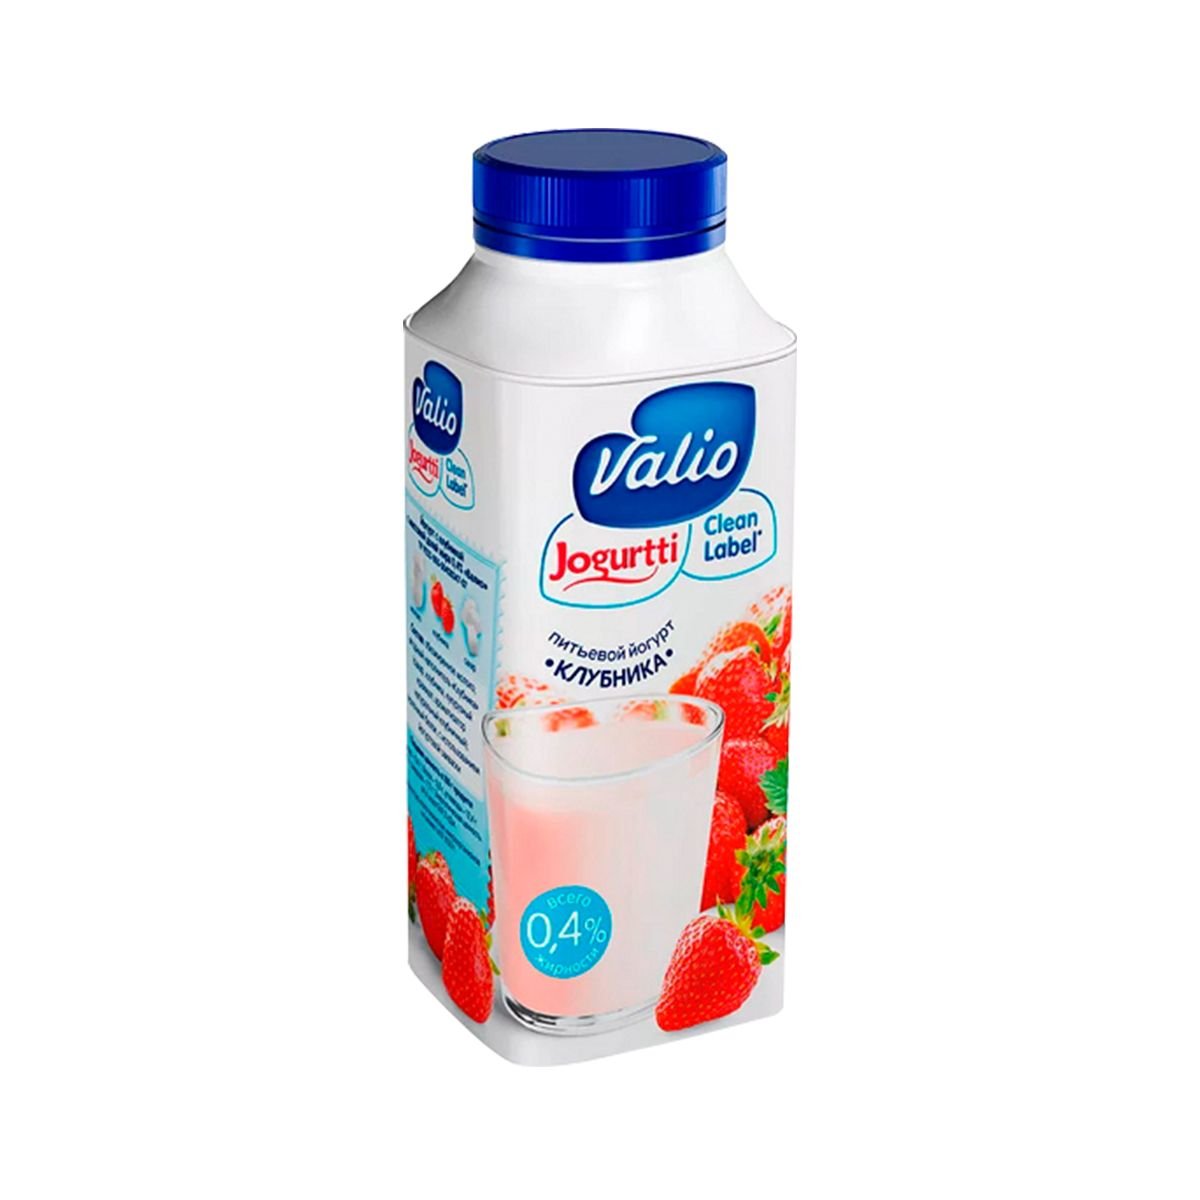 Фото питьевого йогурта. Валио йогурт питьевой. Питьевой йогурт Valio абрикос-облепиха 0.4%, 330 г. Йогурт Валио питьевой clean Label с клубникой 04% 330 г. Йогурт питьевой 330мл.